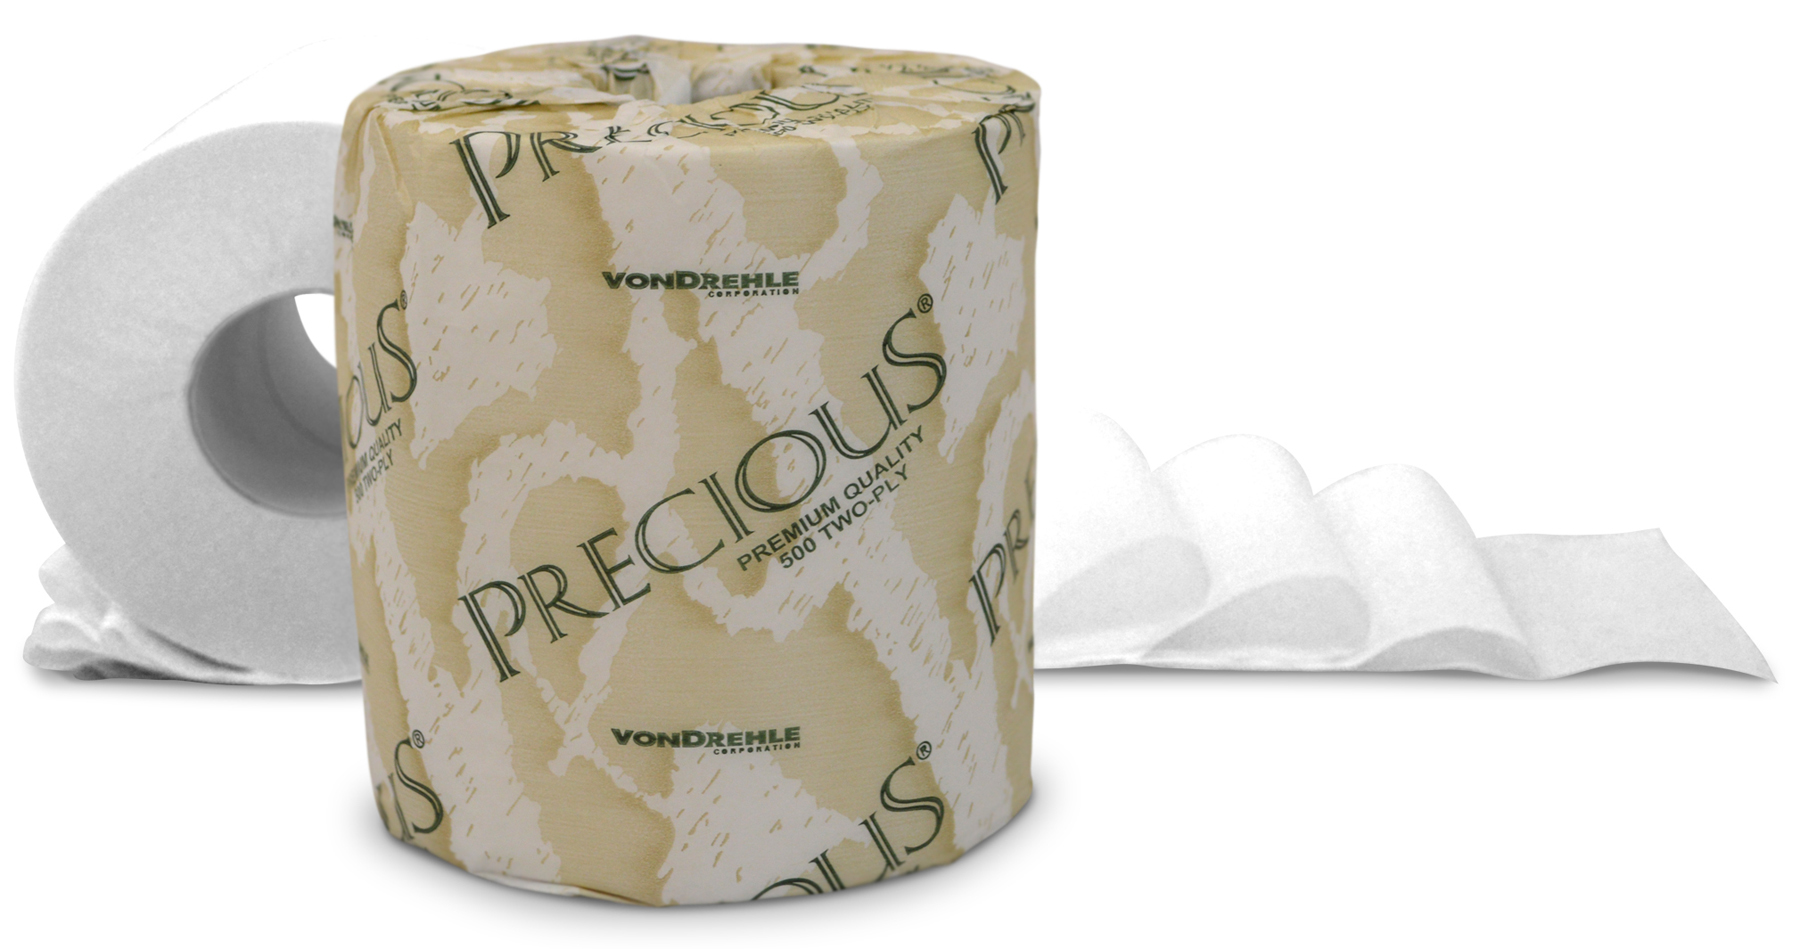 8215 Precious bath tissue
2-ply 96/500s/cs 25cs/skid
4.3 x 3.6 virgin fiber sheet